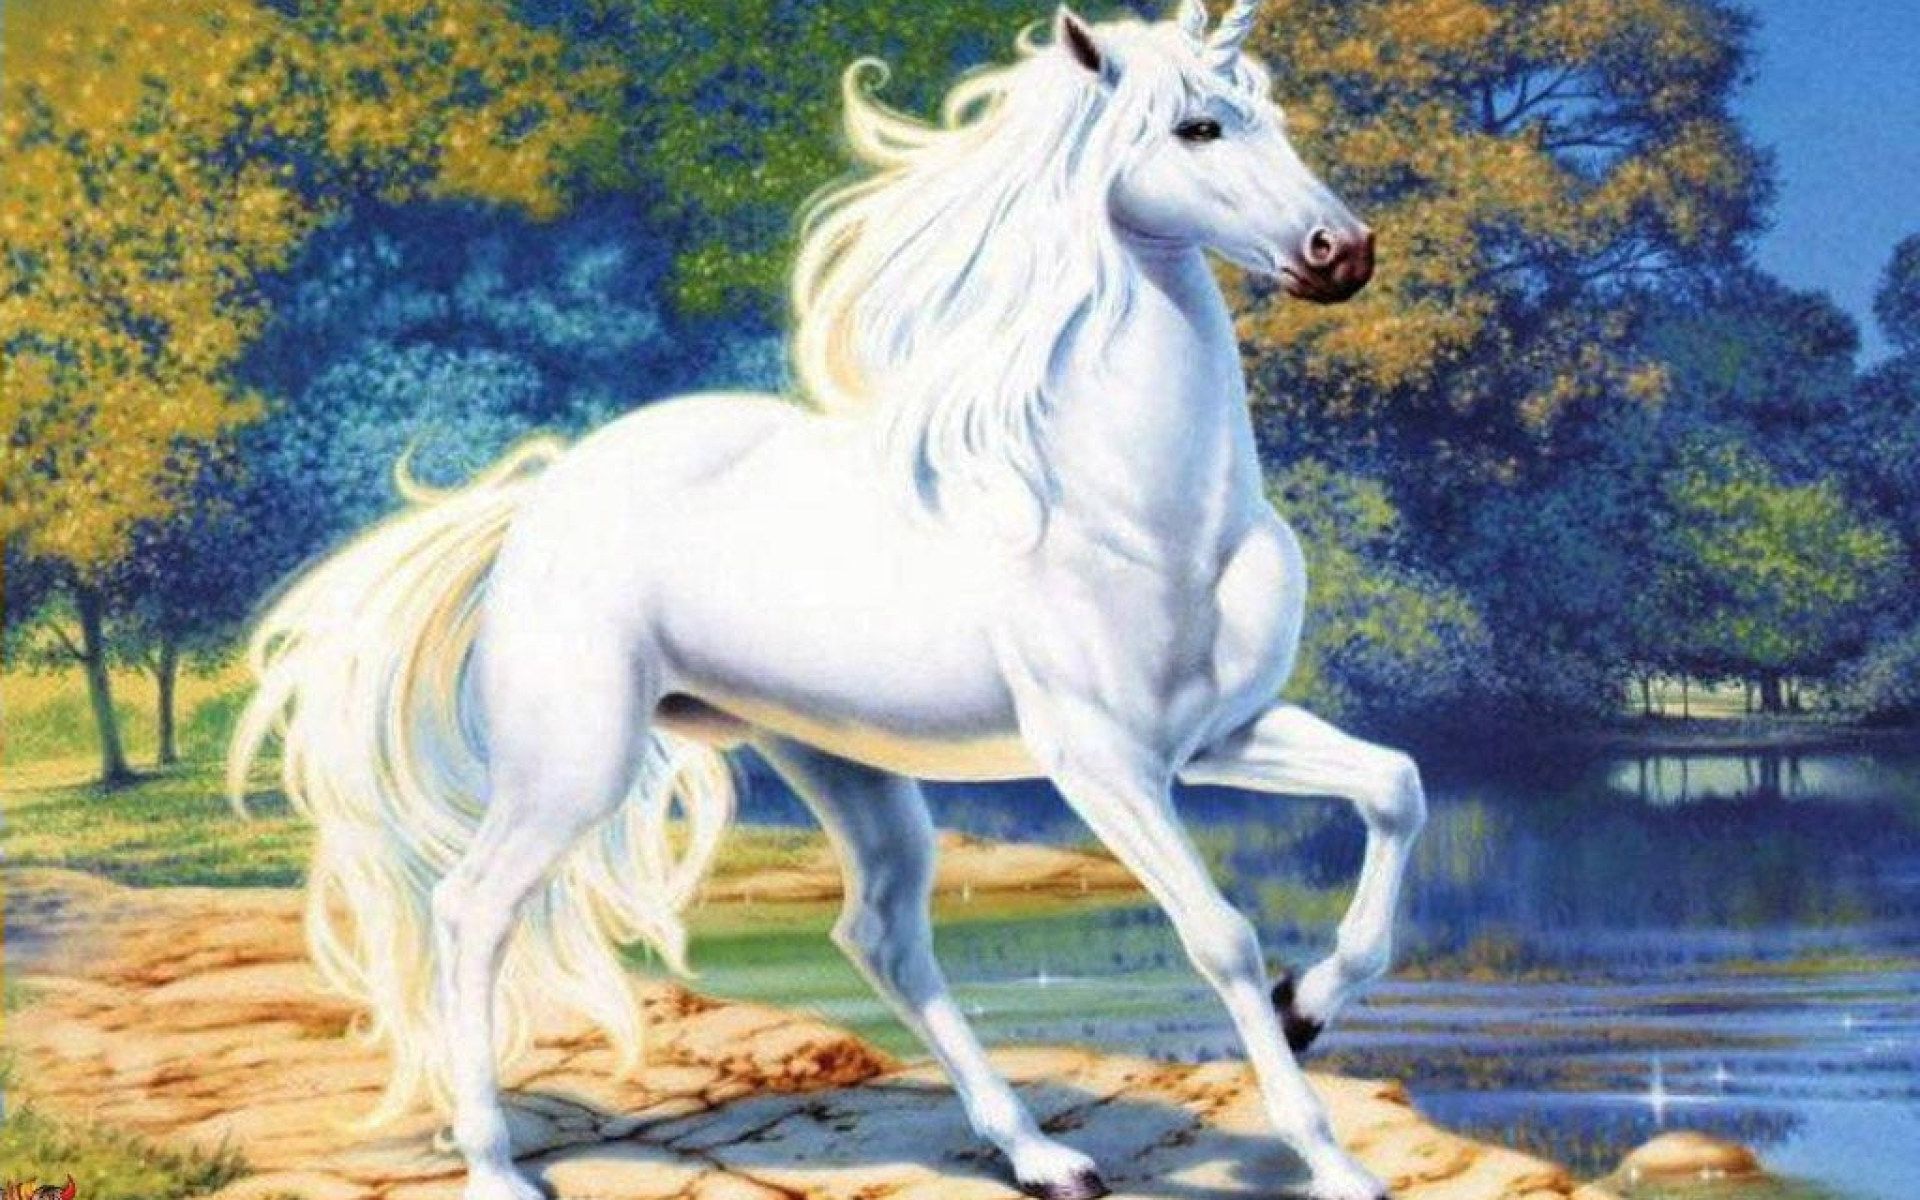 White unicorn illustration, fantasy art, animal themes, horse wallpaper • Wallpaper For You HD Wallpaper For Desktop & Mobile